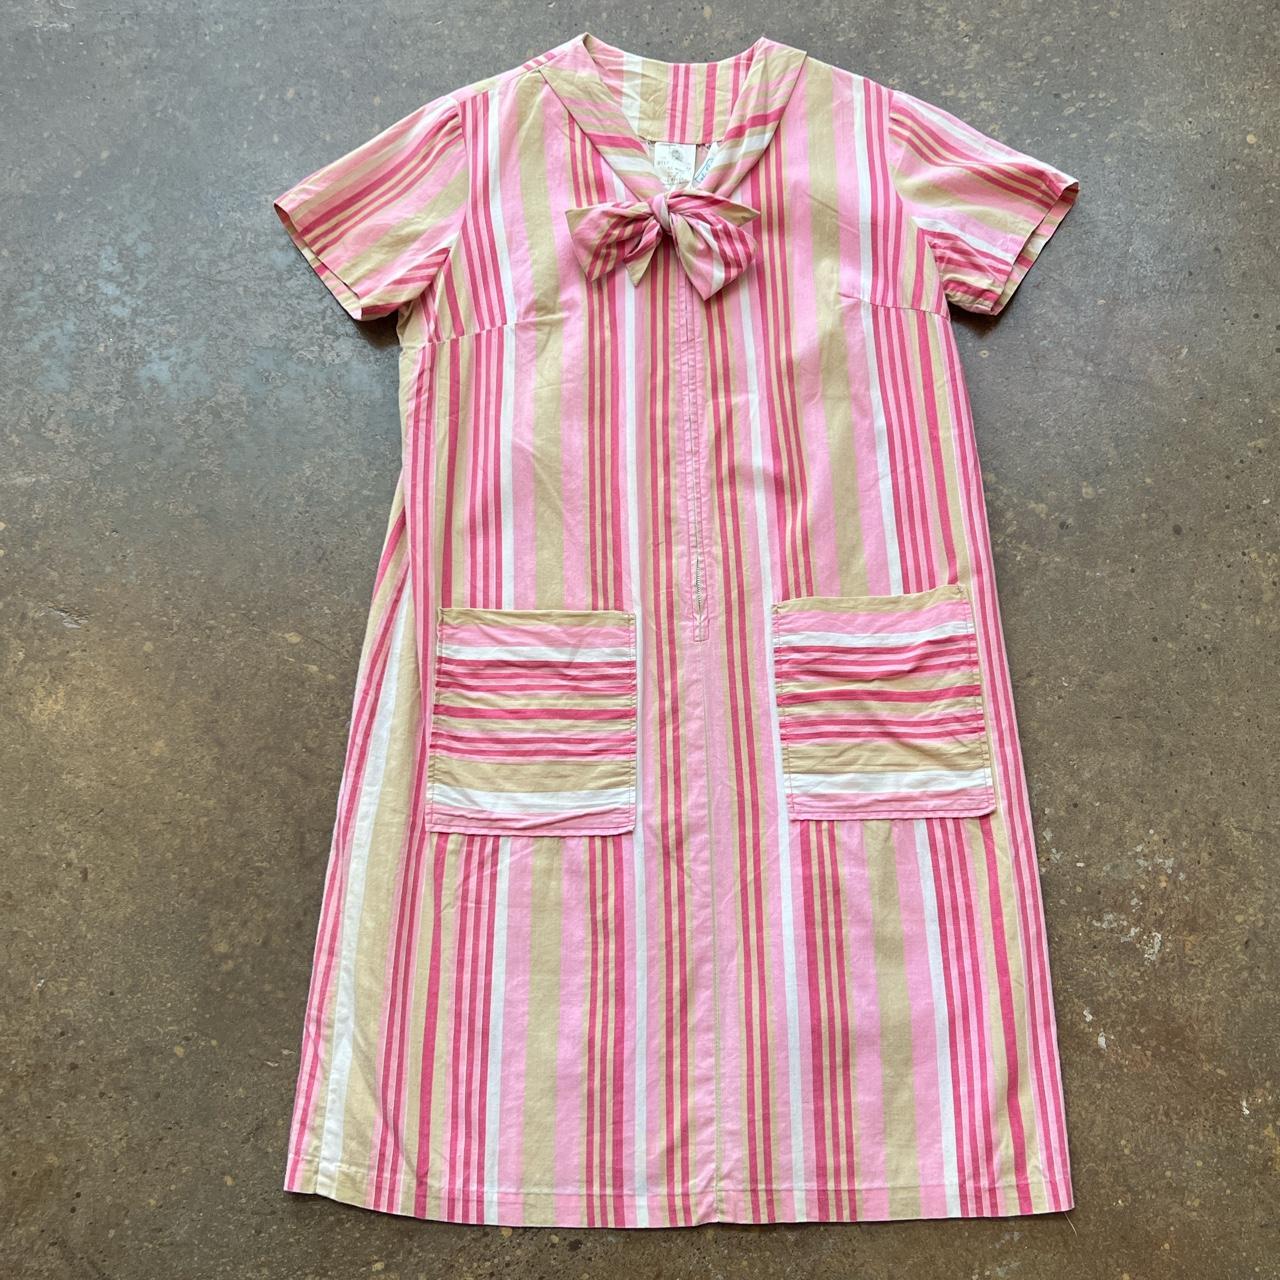 Vintage 1960s pink striped house dress Short... - Depop